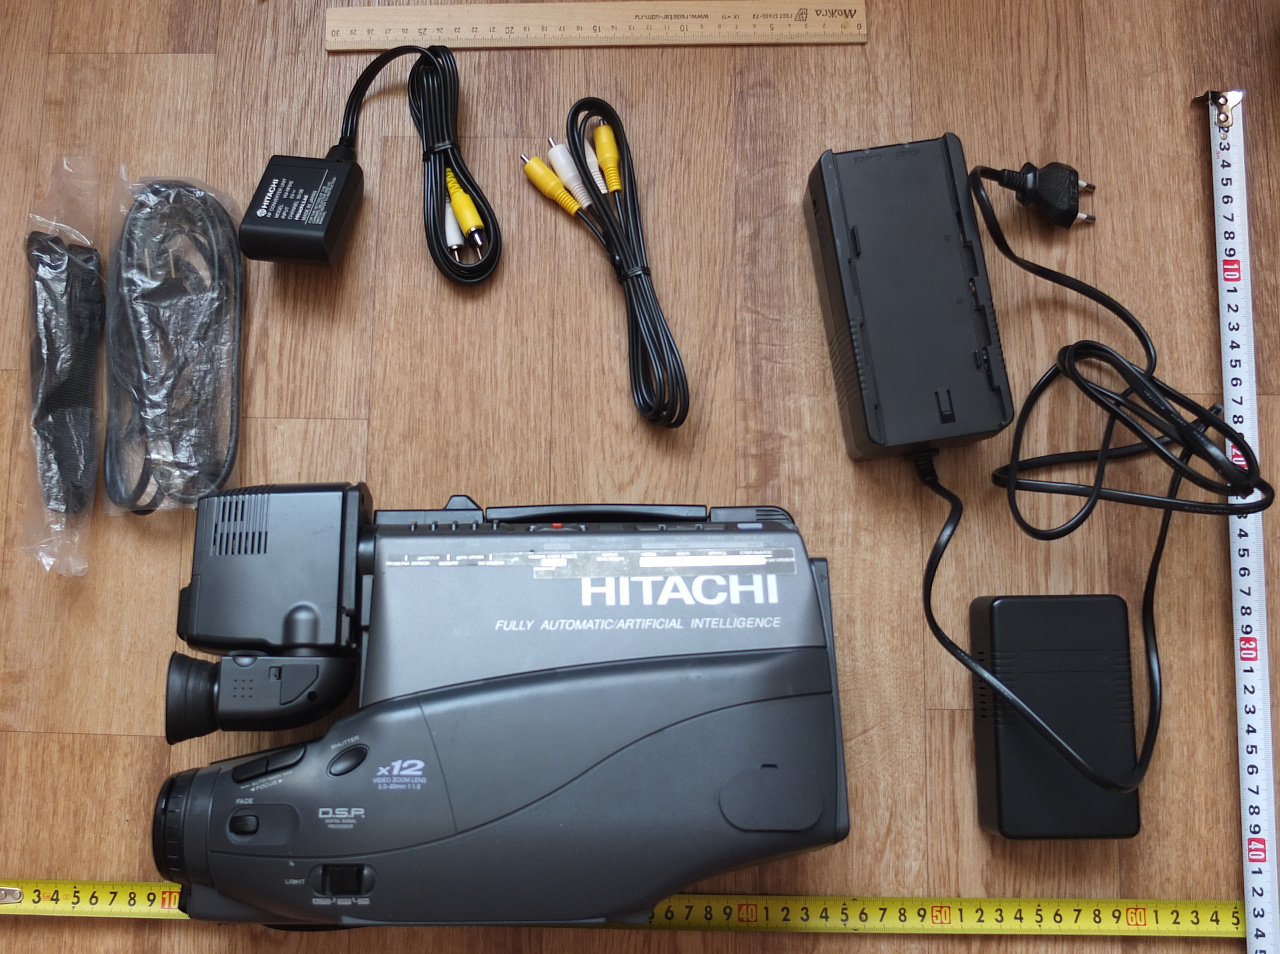 видеокамера Hitachi , винтаж , коллекционная, рабочая фото 2